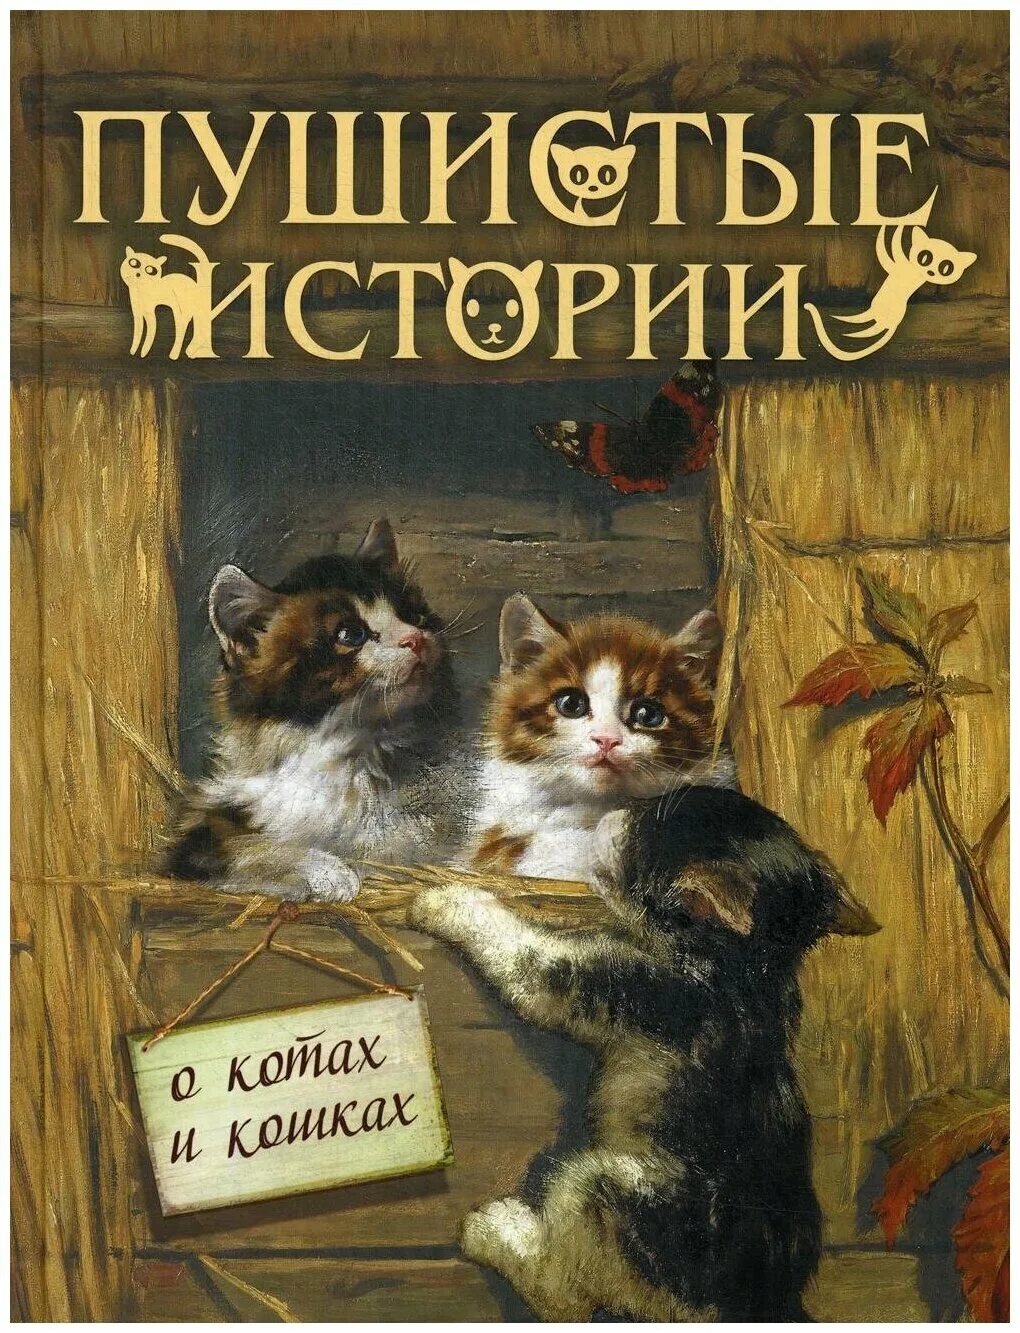 Отзывы про кошку. Книги про кошек. Книги про кошек для детей. Книги о кошках Художественные. Книги о кошках для детей Художественные.